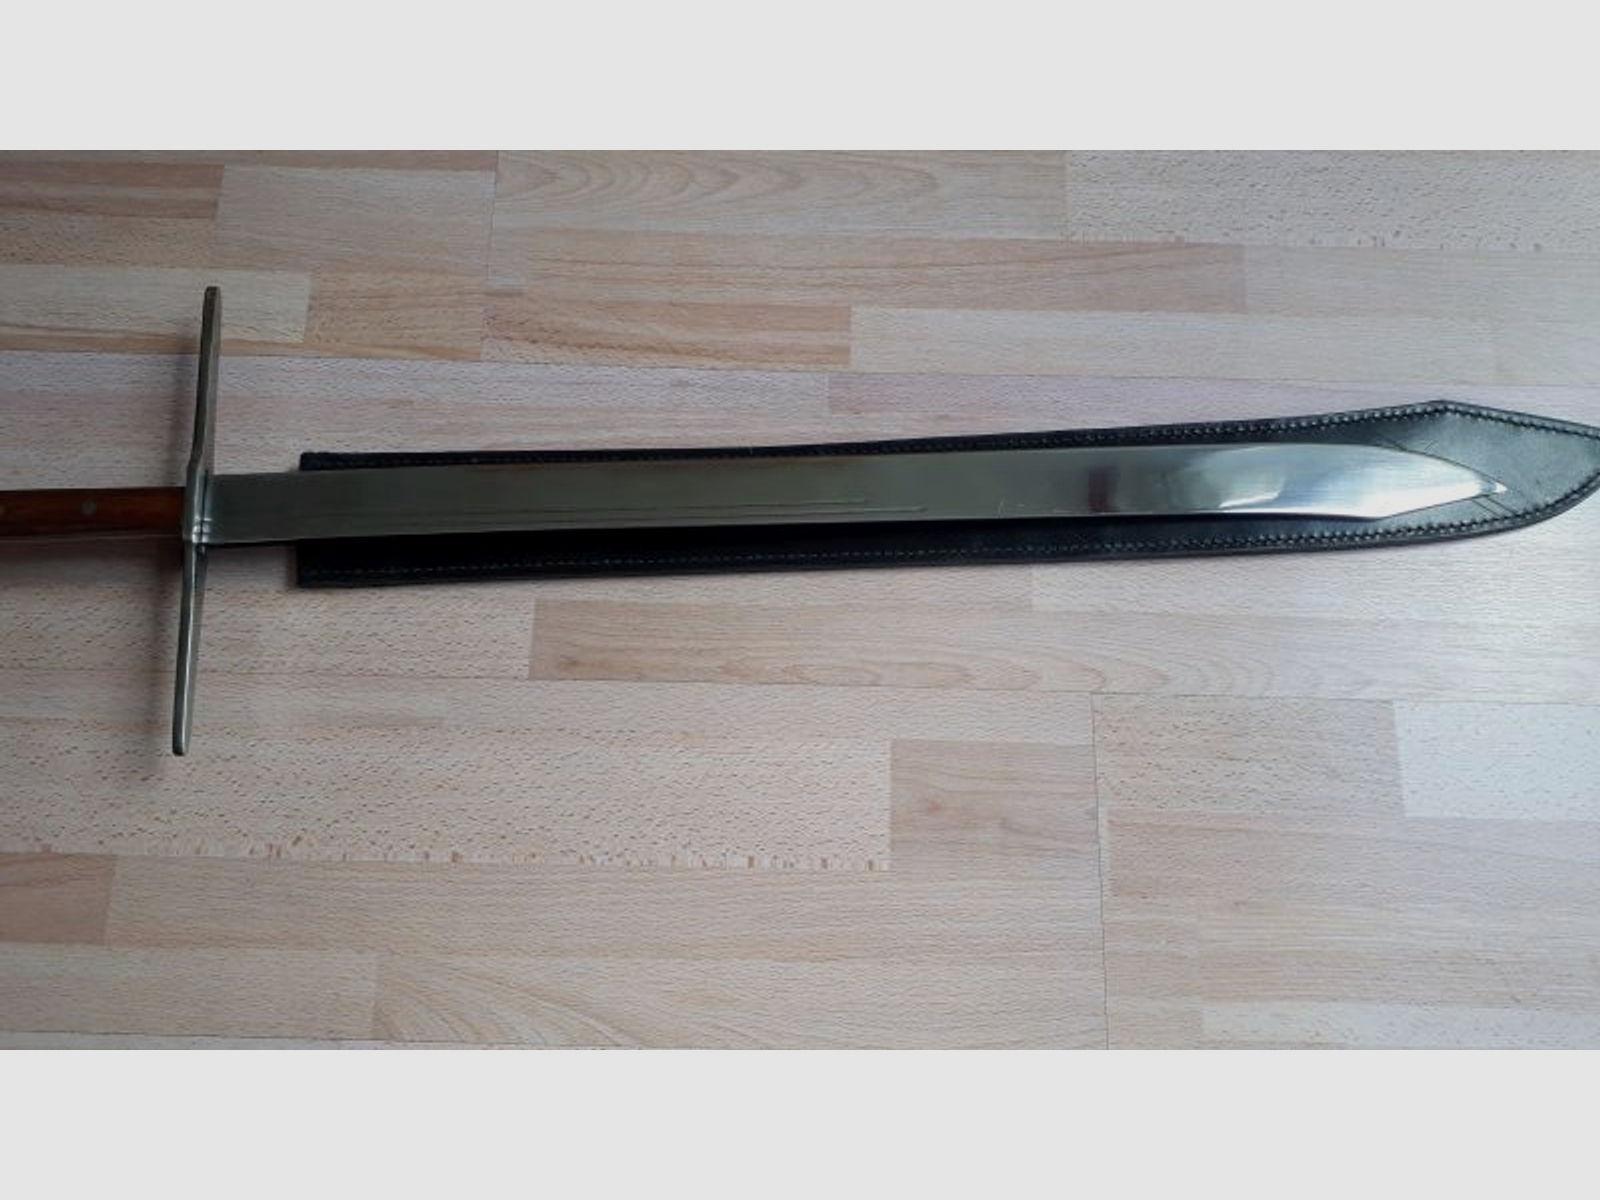 Großes Messer, von Haller Stahlwaren, in OVP & schwarzer Lederscheide, geschärft